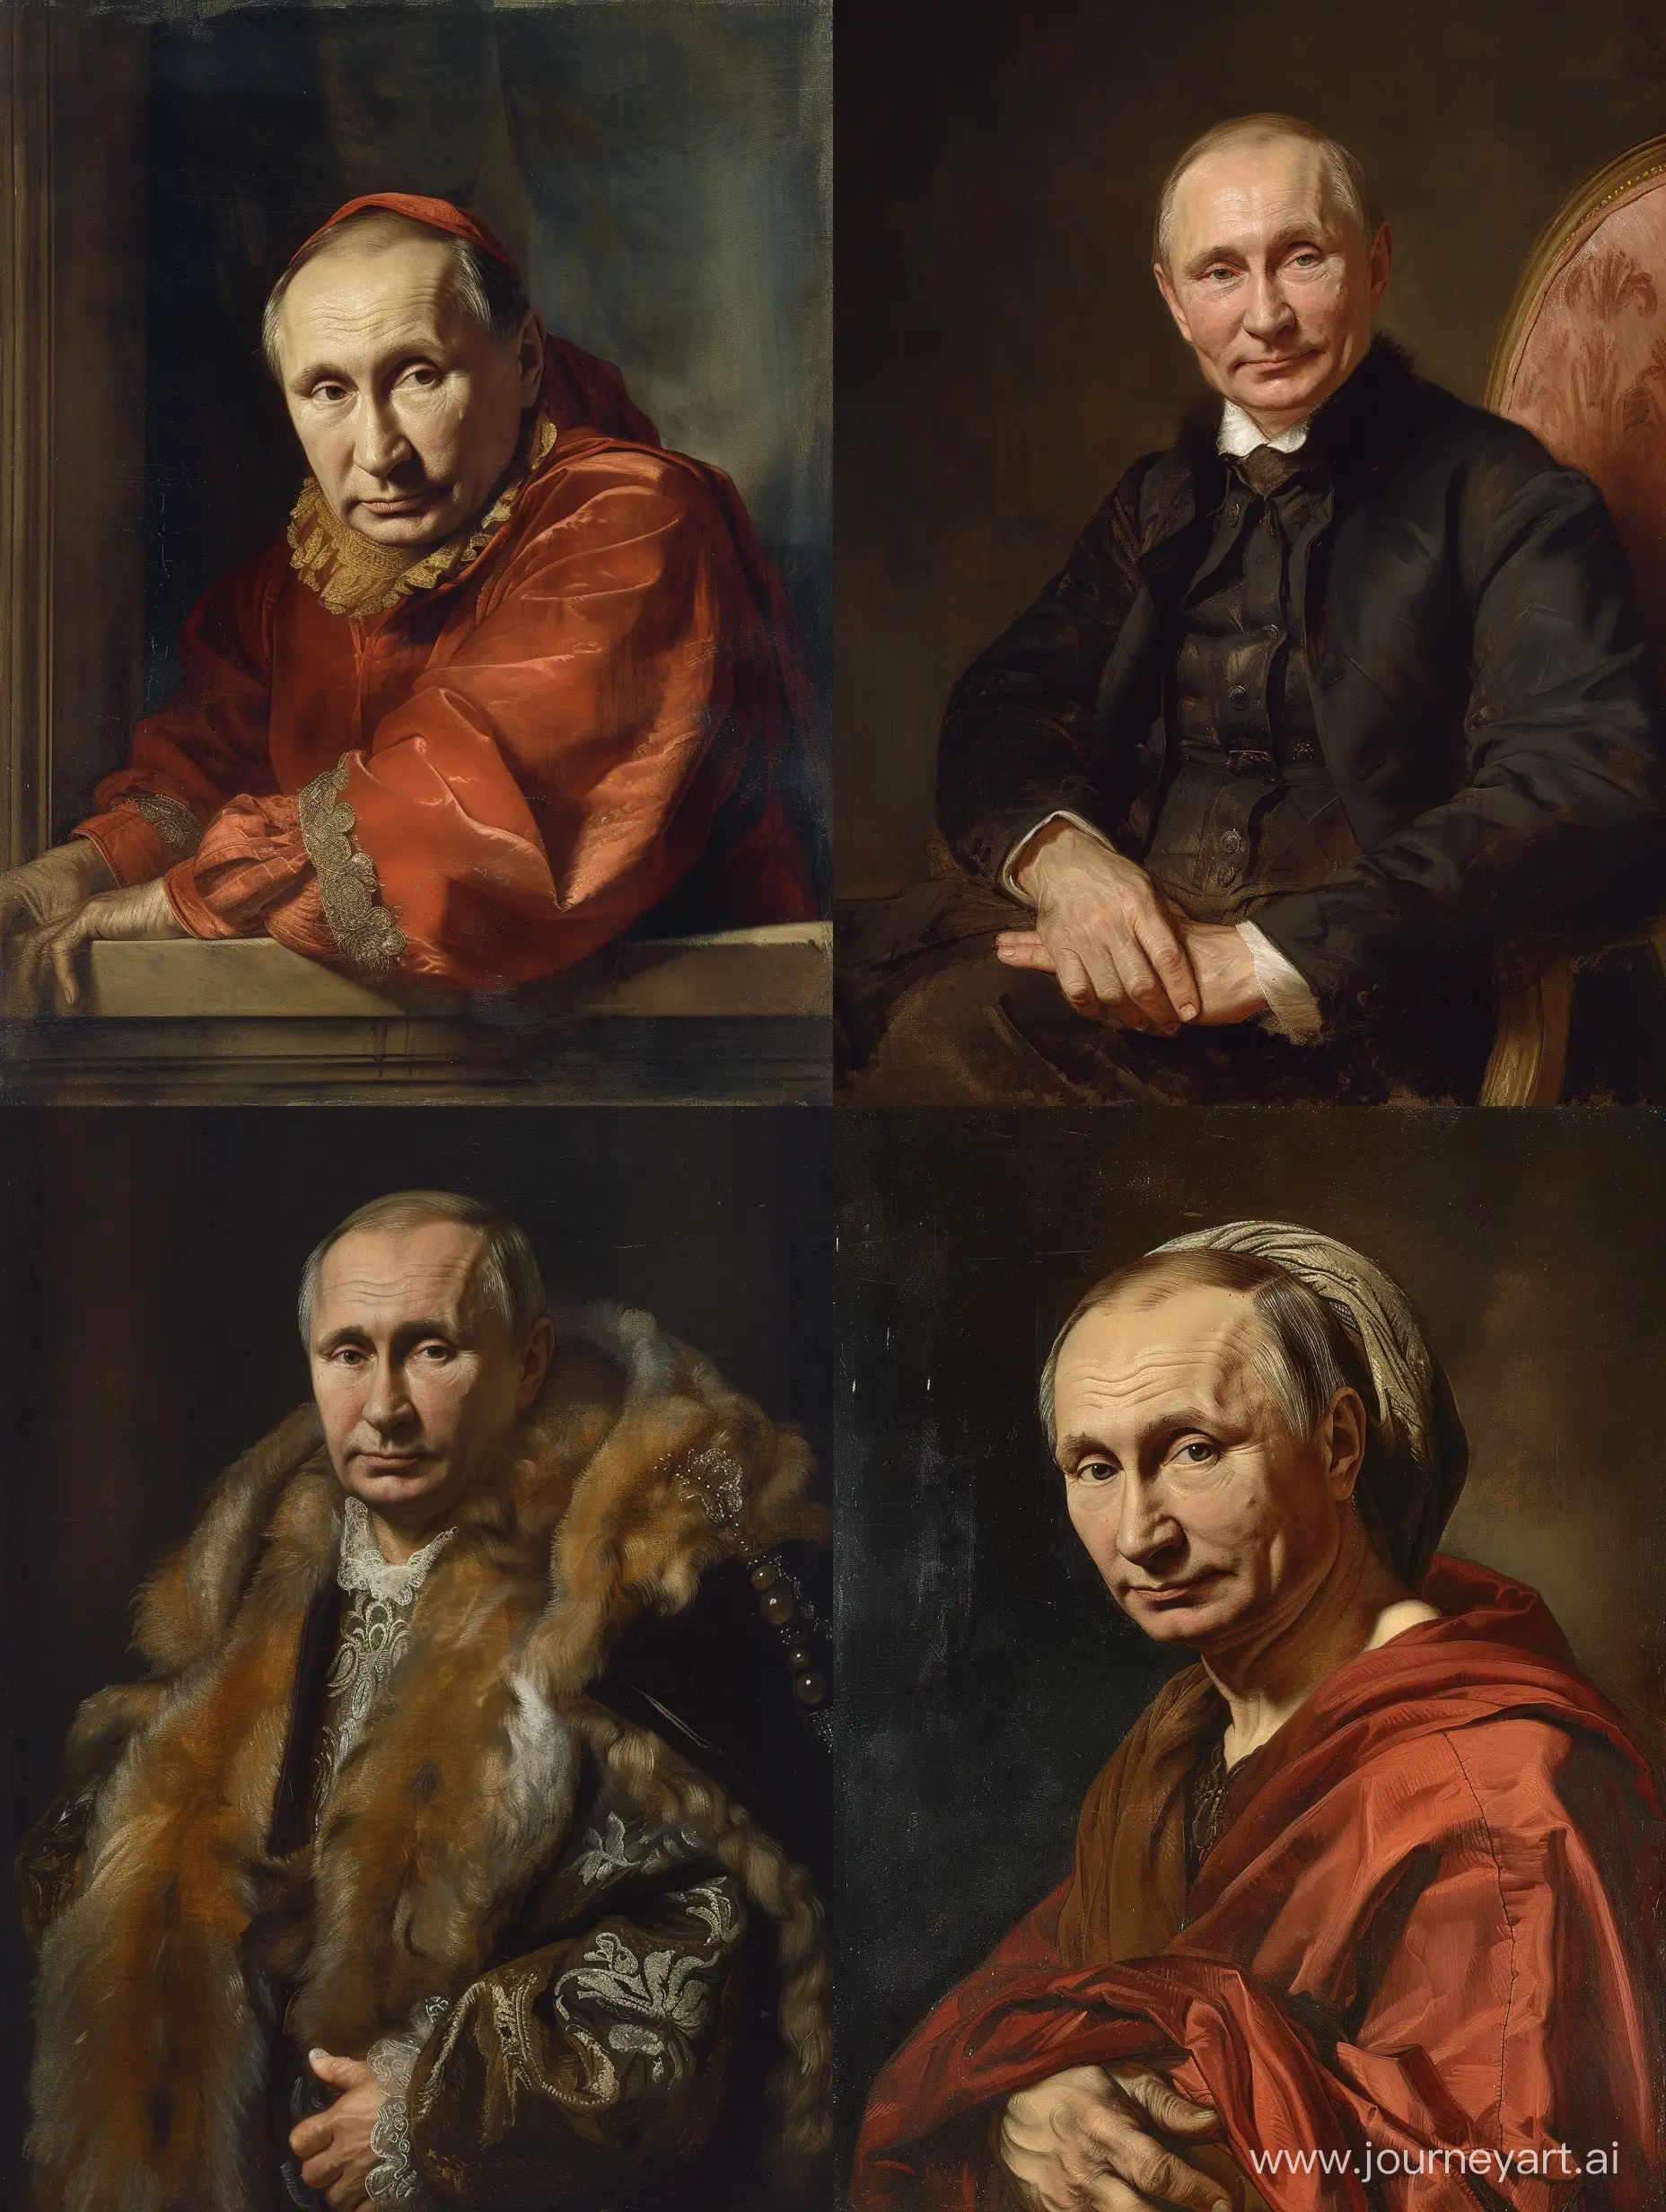 renaissance style portrait of Vladimir Putin by jacques louis david